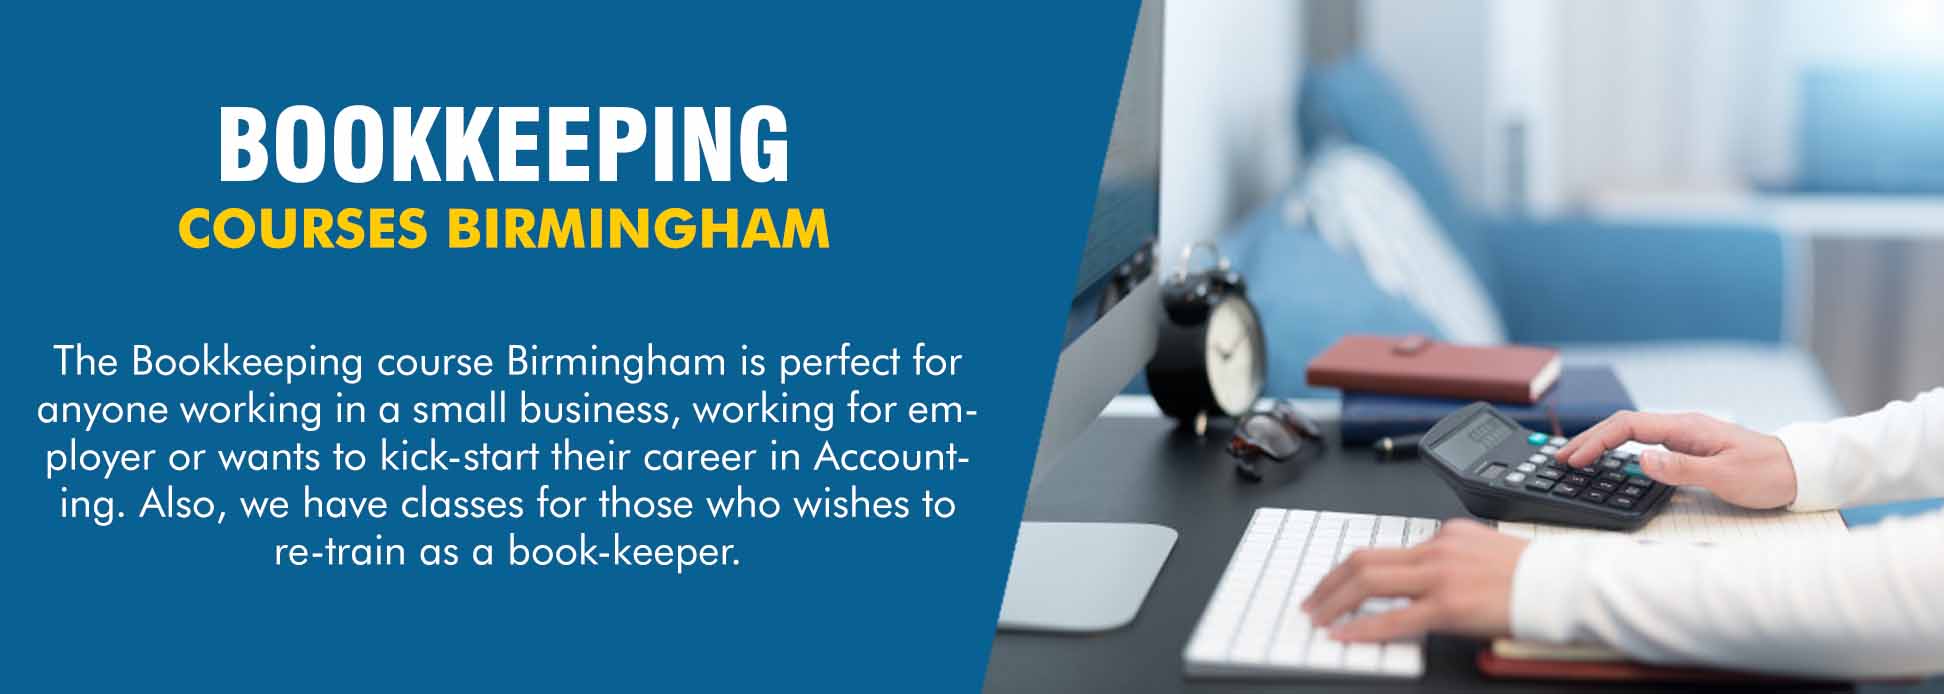 Bookkeeping-courses-in-birmingham